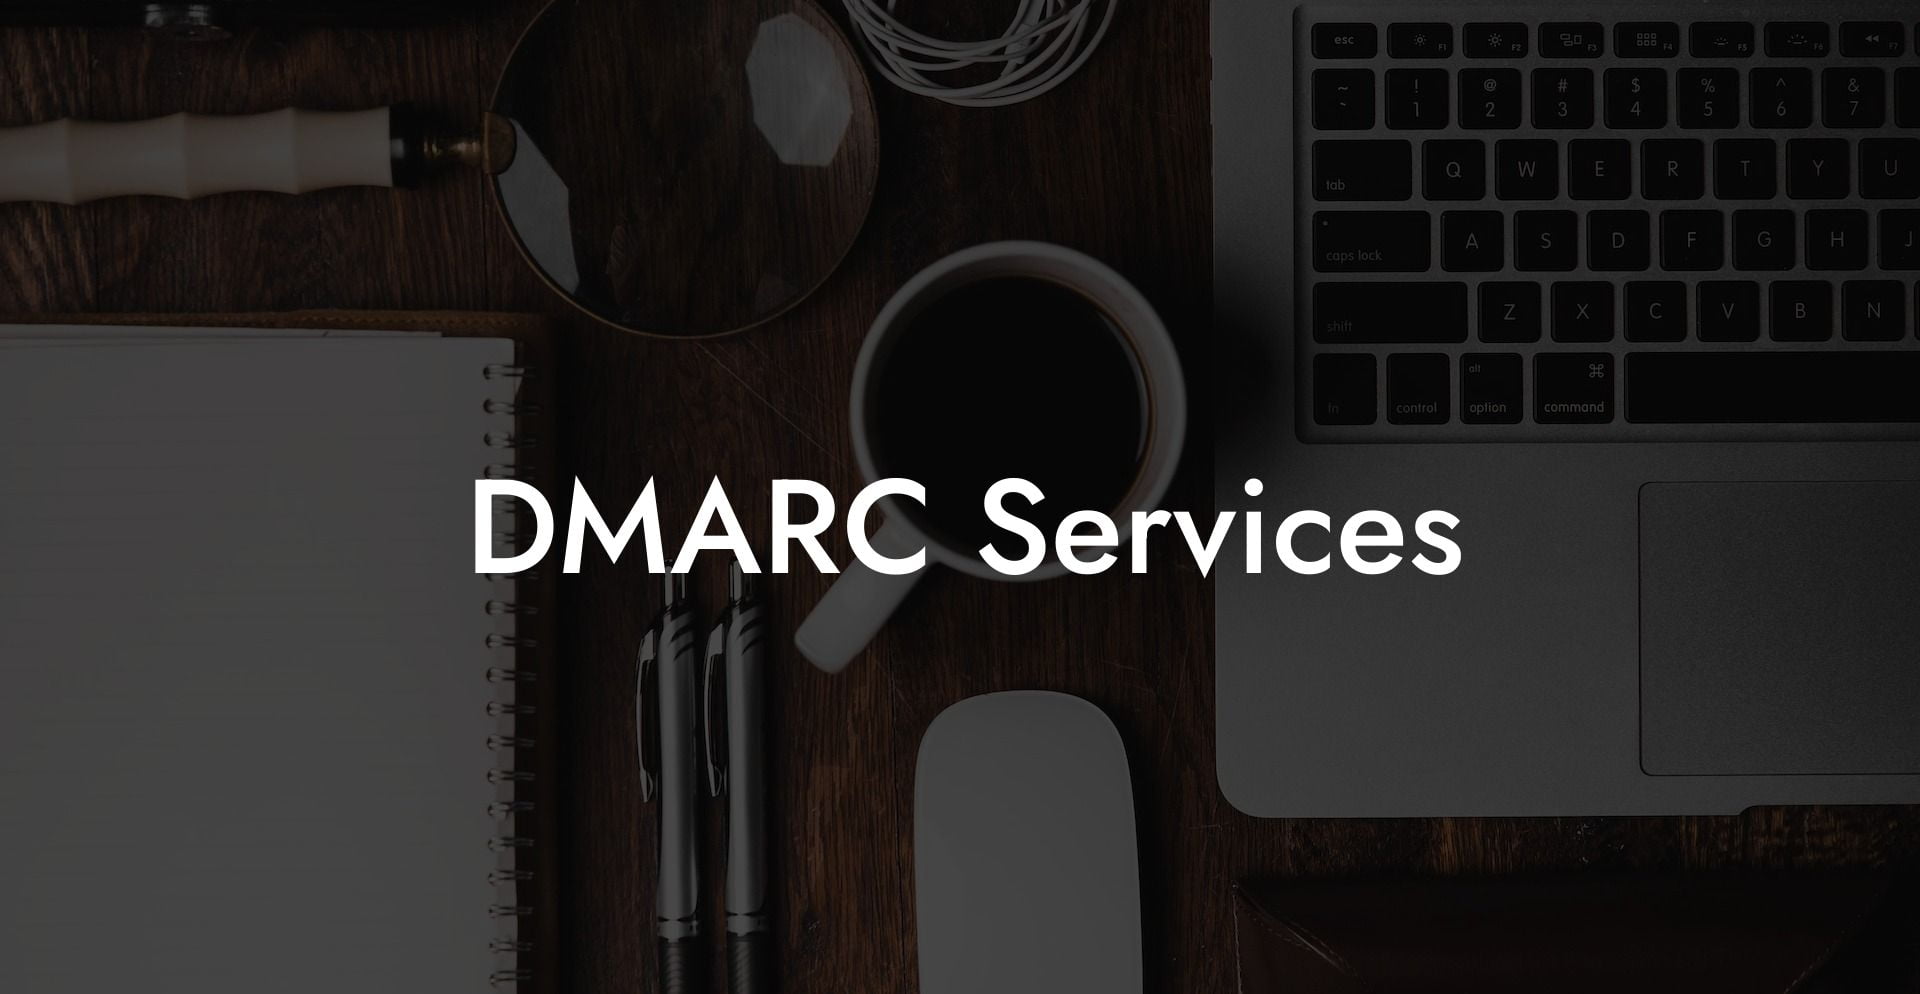 DMARC Services